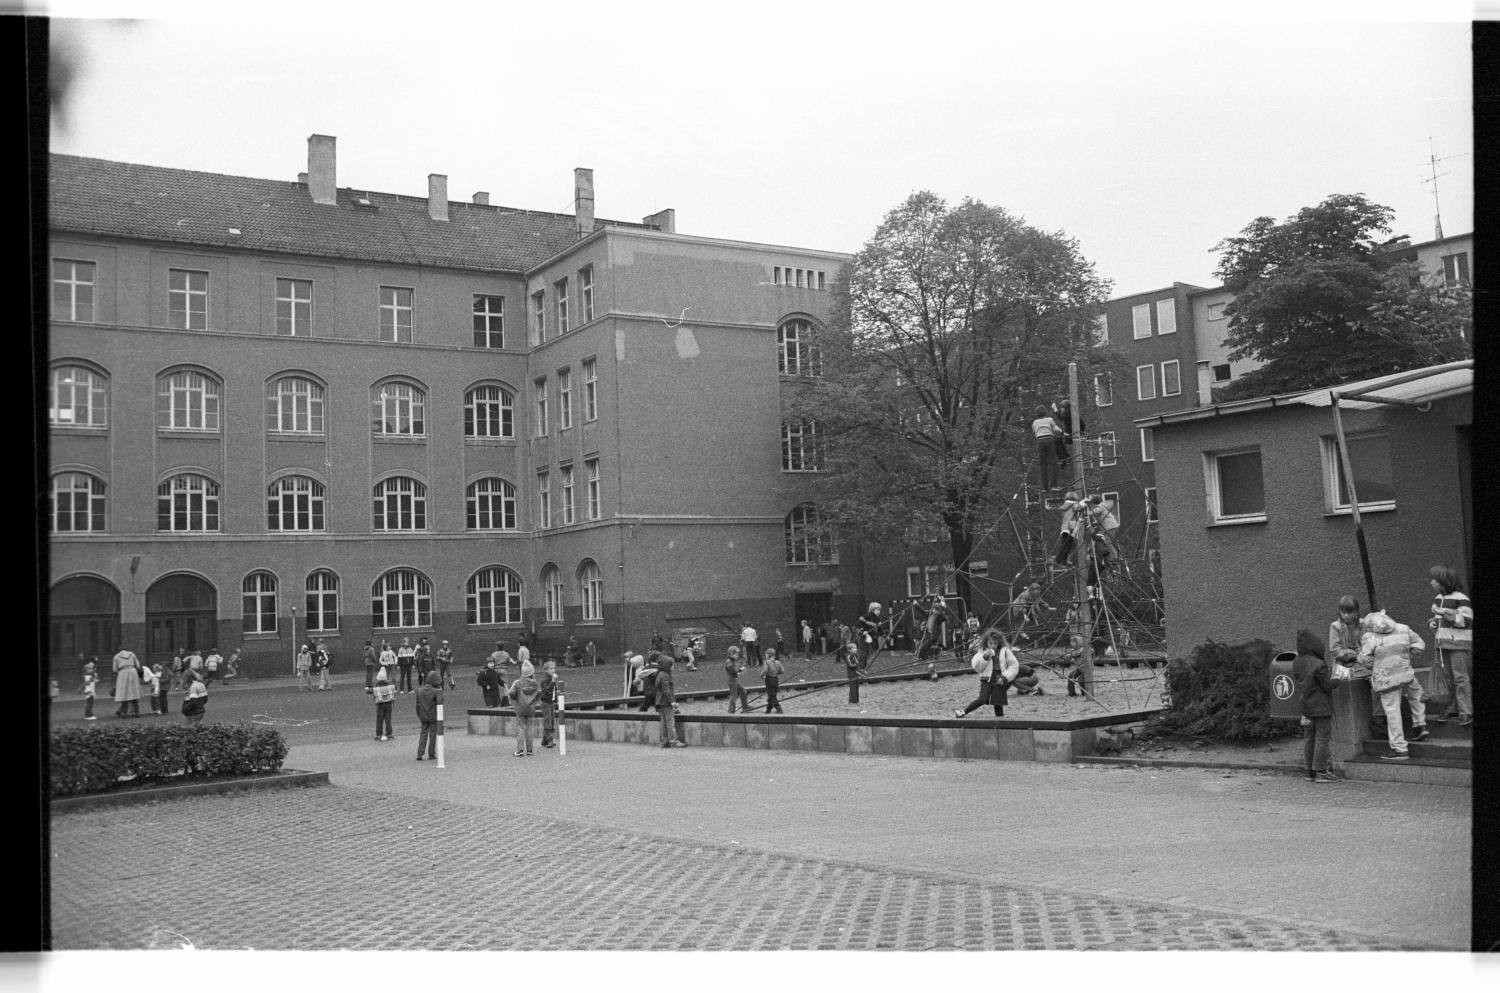 Kleinbildnegativ: Schulhof, Georg-von-Giesche-Schule, 1981 (Museen Tempelhof-Schöneberg/Jürgen Henschel RR-F)